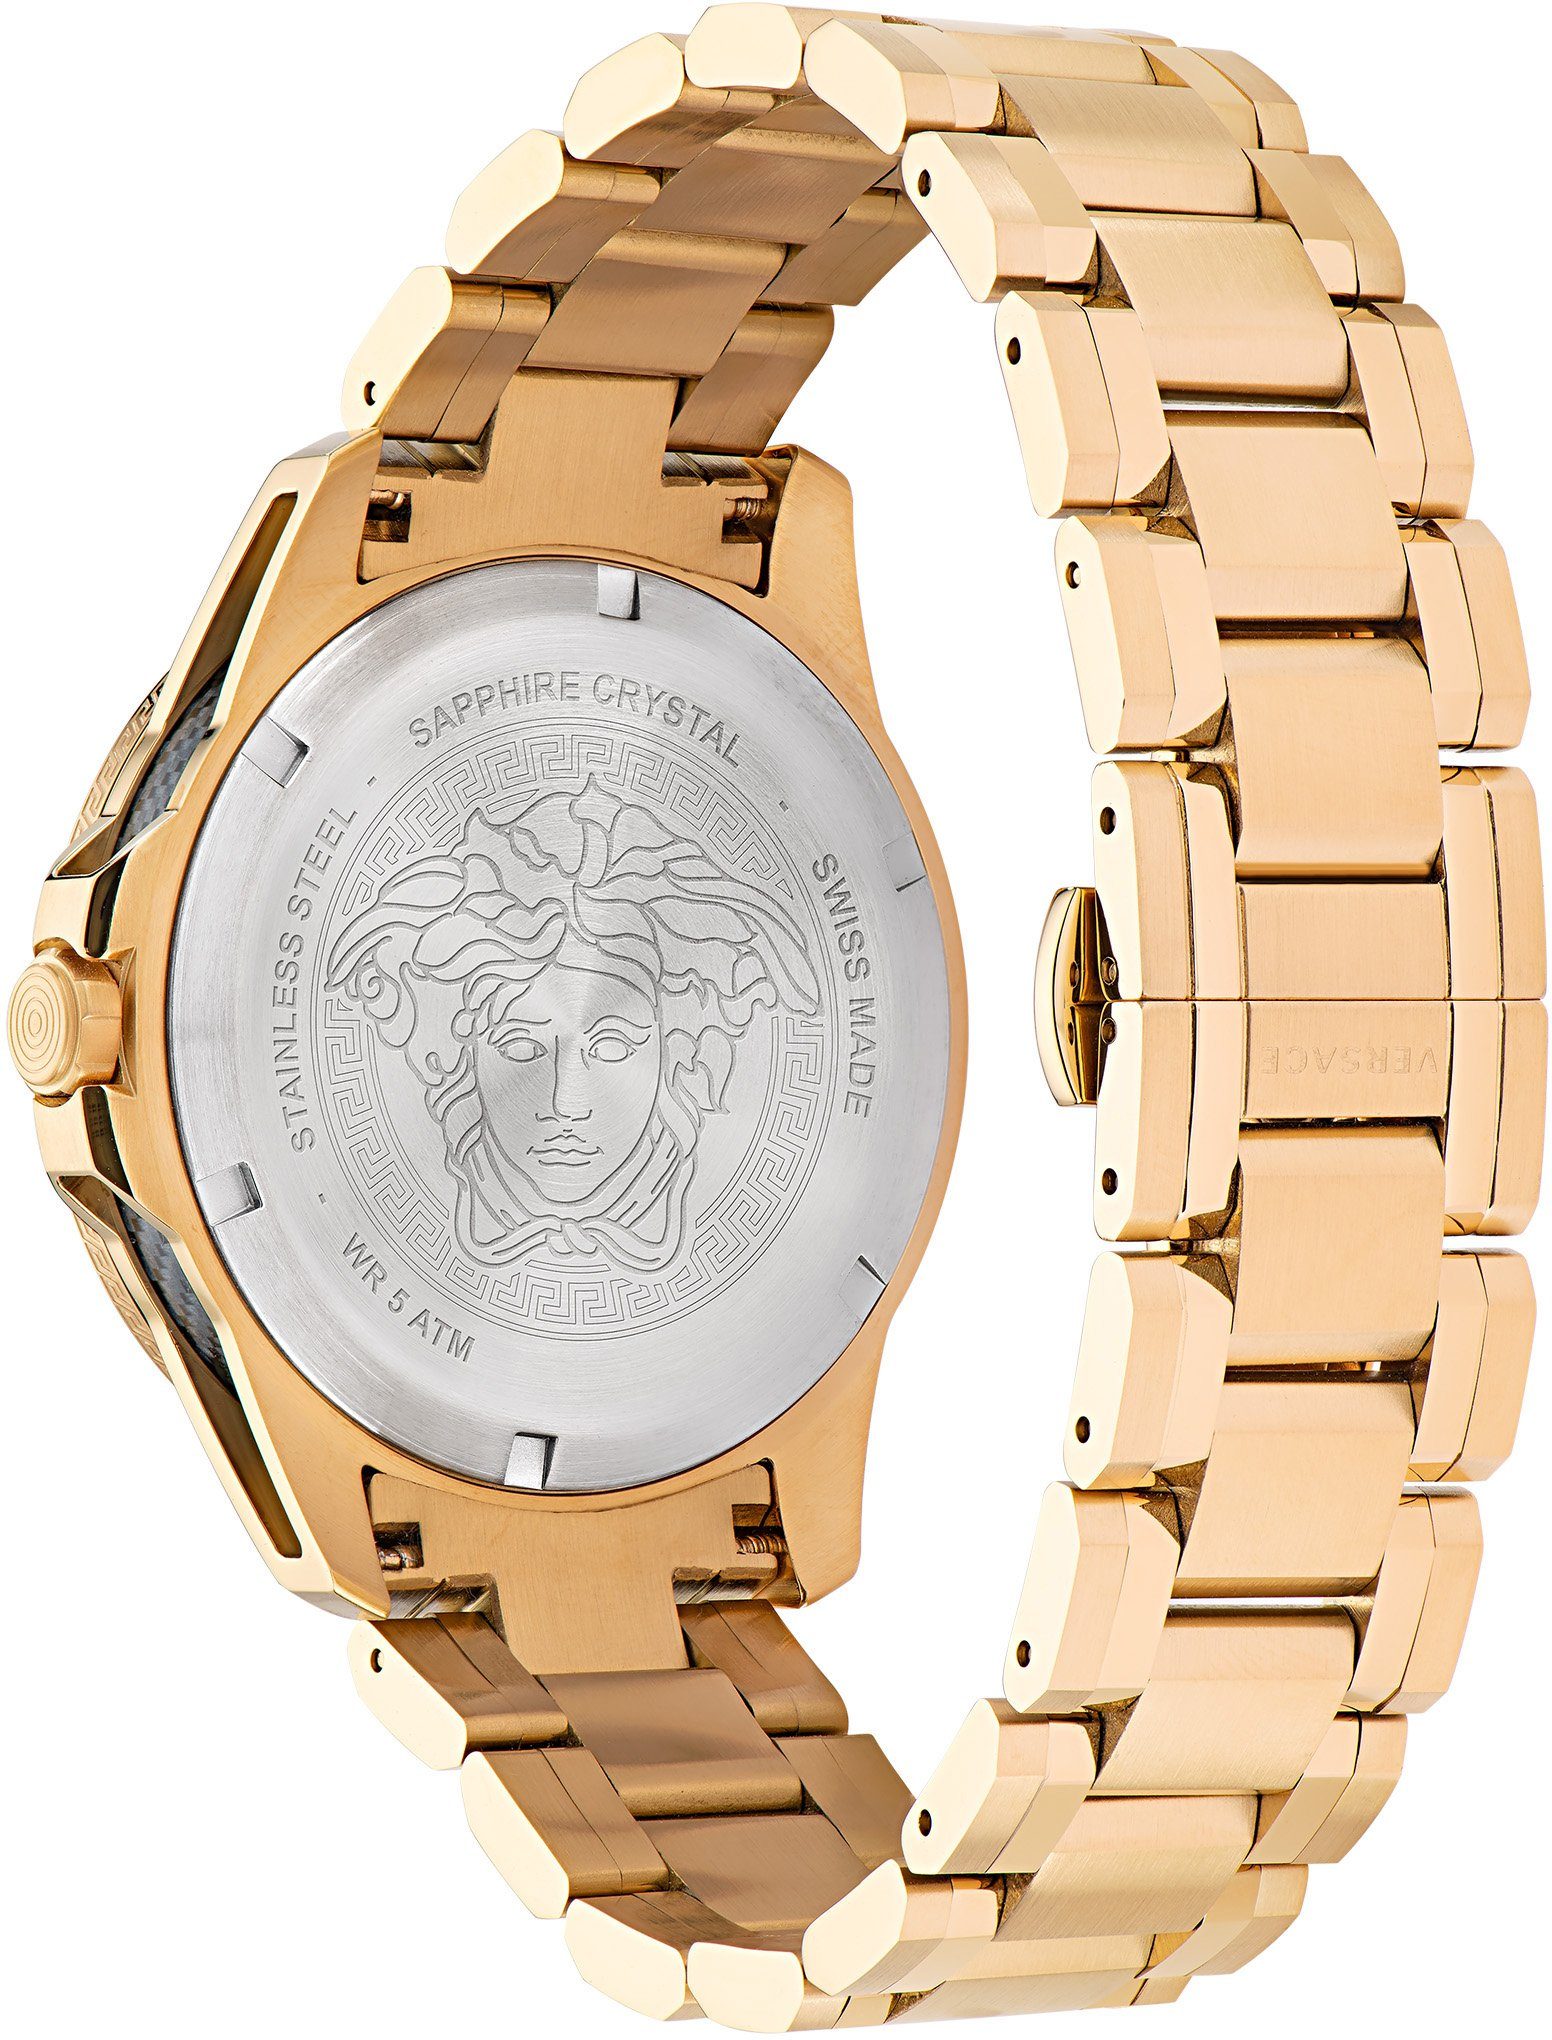 Uhr SPORT TECH VE2W00522 GMT, Versace Schweizer